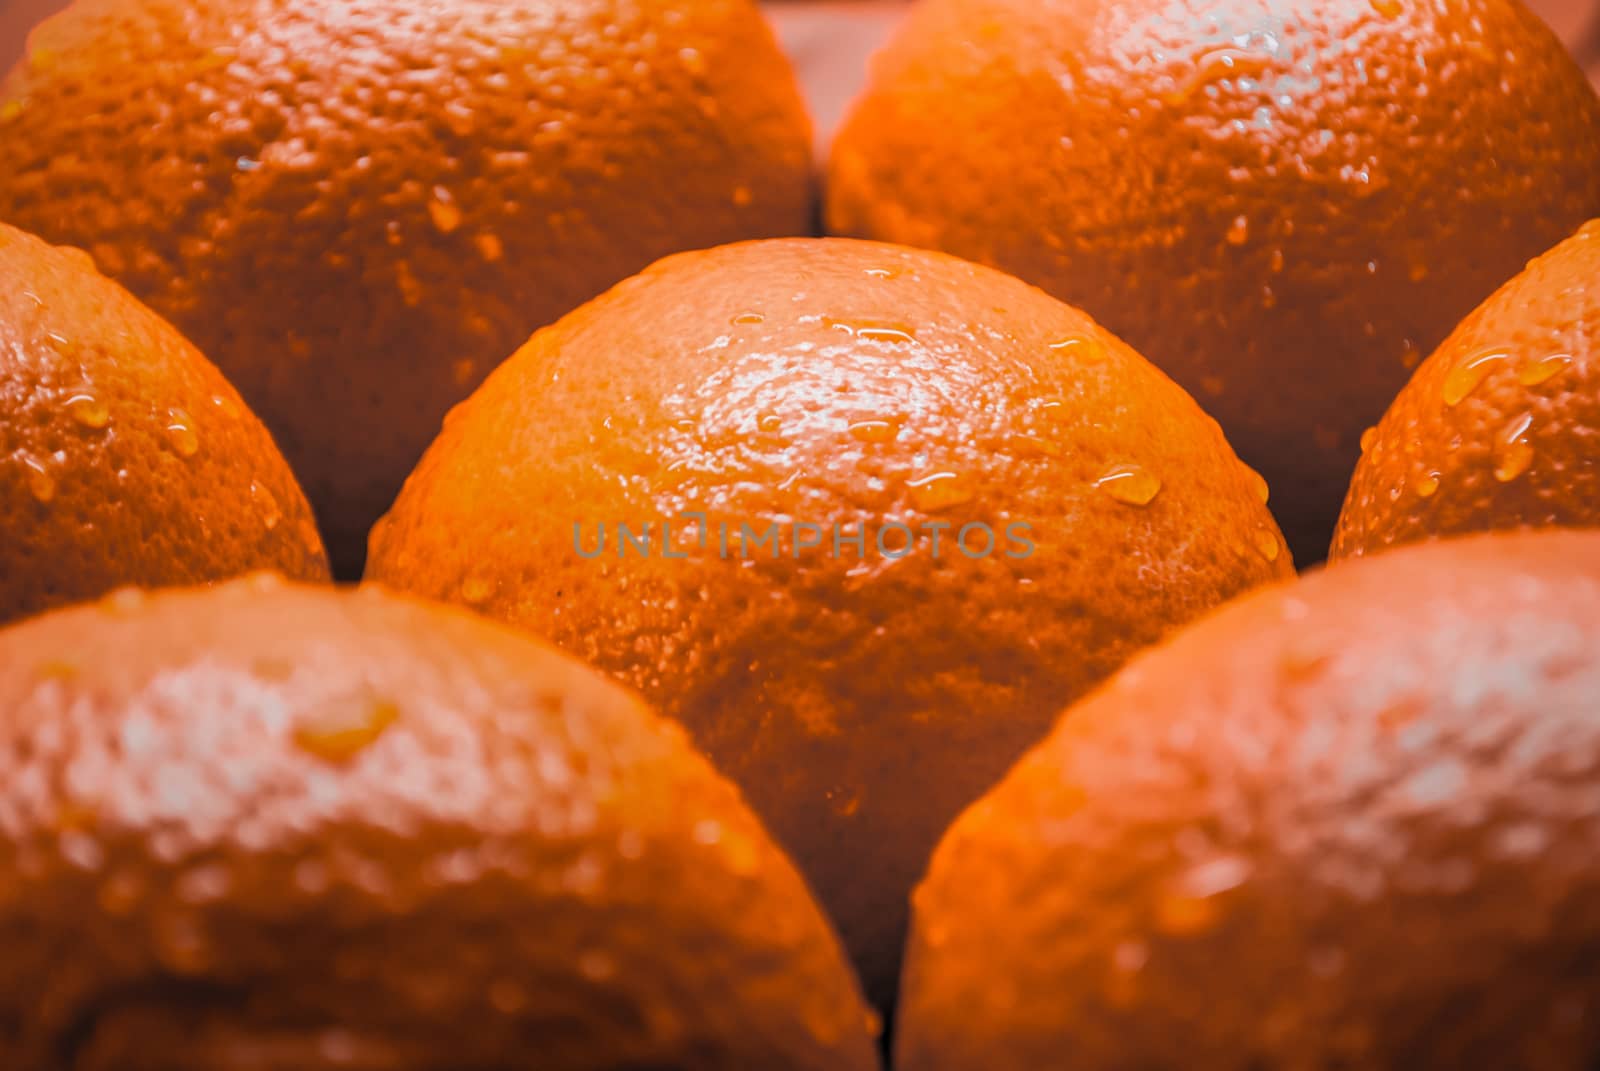 Close up of fresh juicy oranges